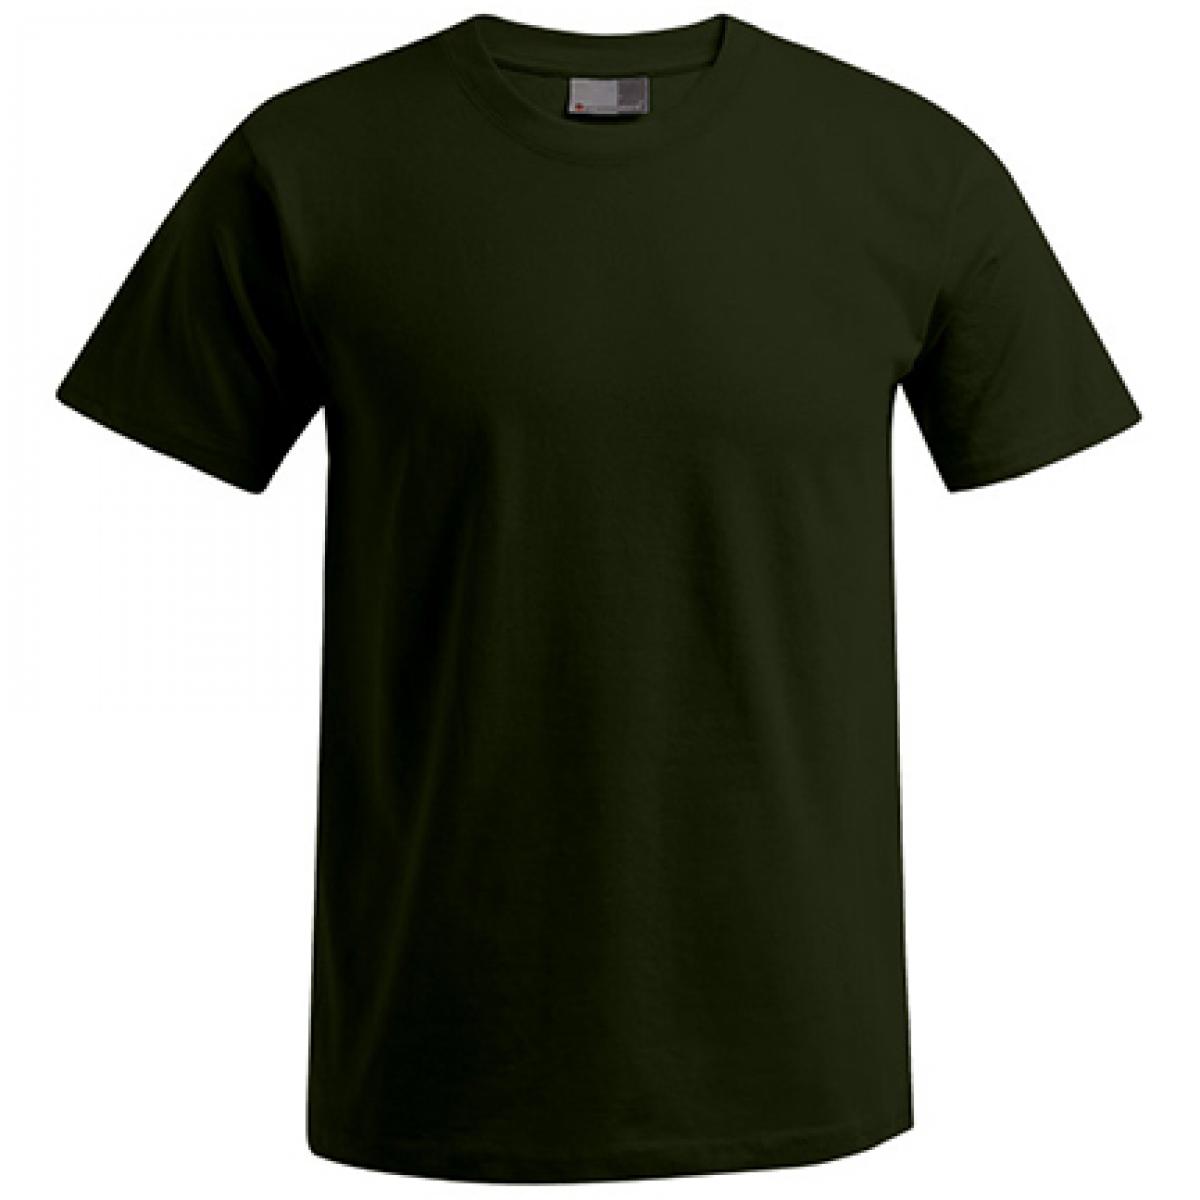 Hersteller: Promodoro Herstellernummer: 3000/3099 Artikelbezeichnung: Men´s Premium Herren T-Shirt - bis 5XL Farbe: Khaki